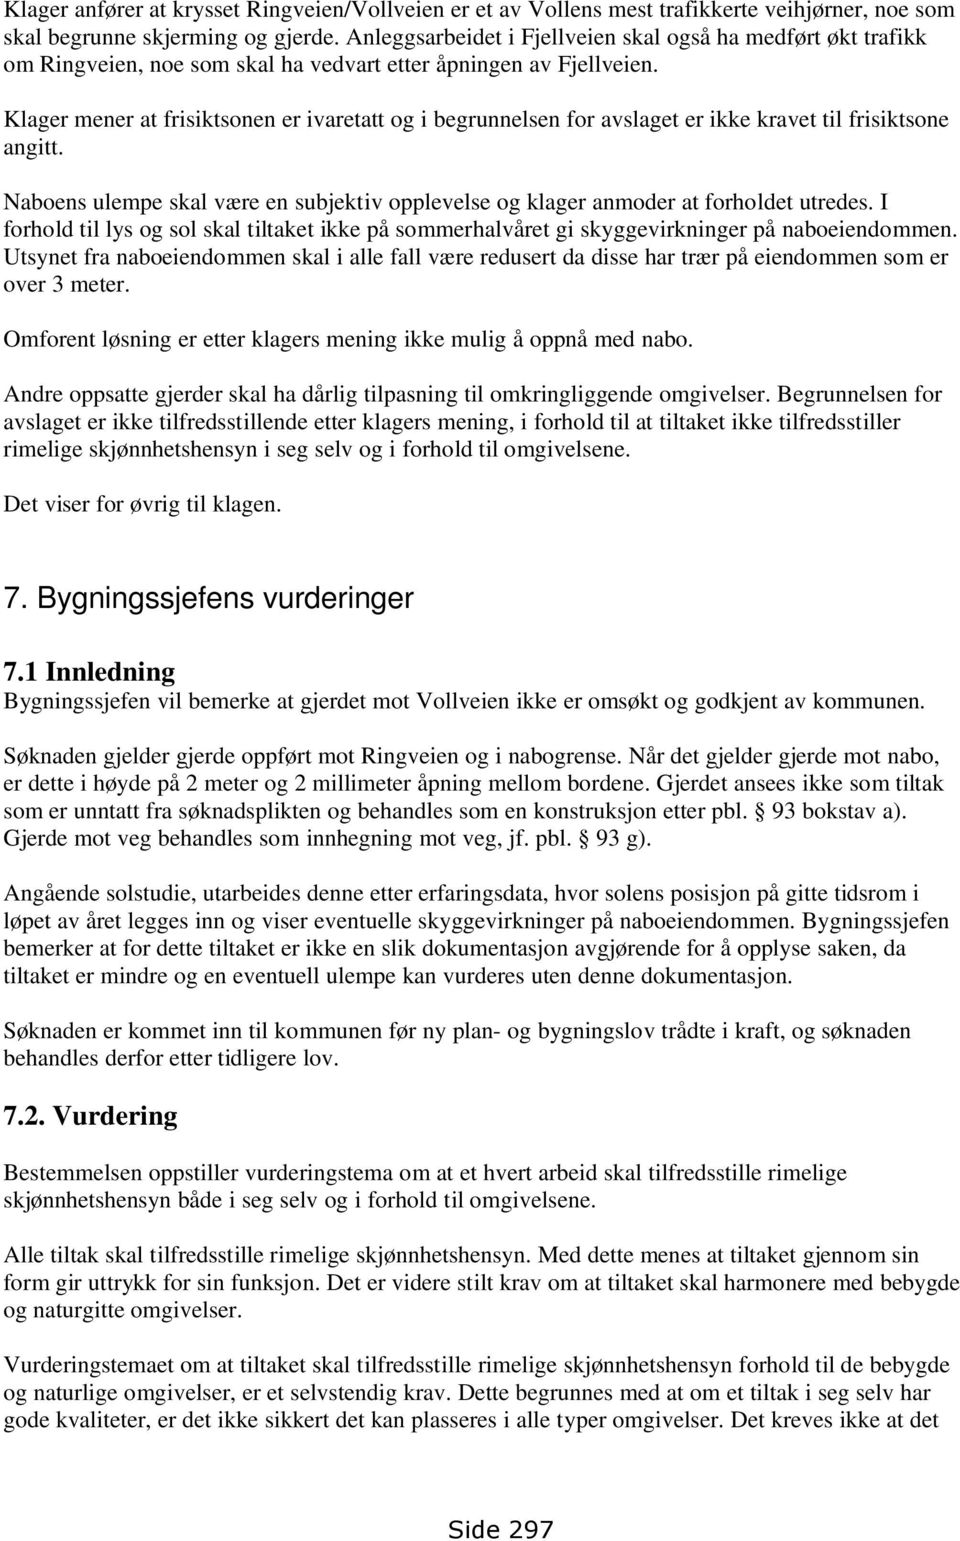 Klage på avslag - søknad om dispensasjon for tillatelse for oppført gjerde  mot vei og nabo i Ringveien 11 B, Birger Hveding - PDF Gratis nedlasting